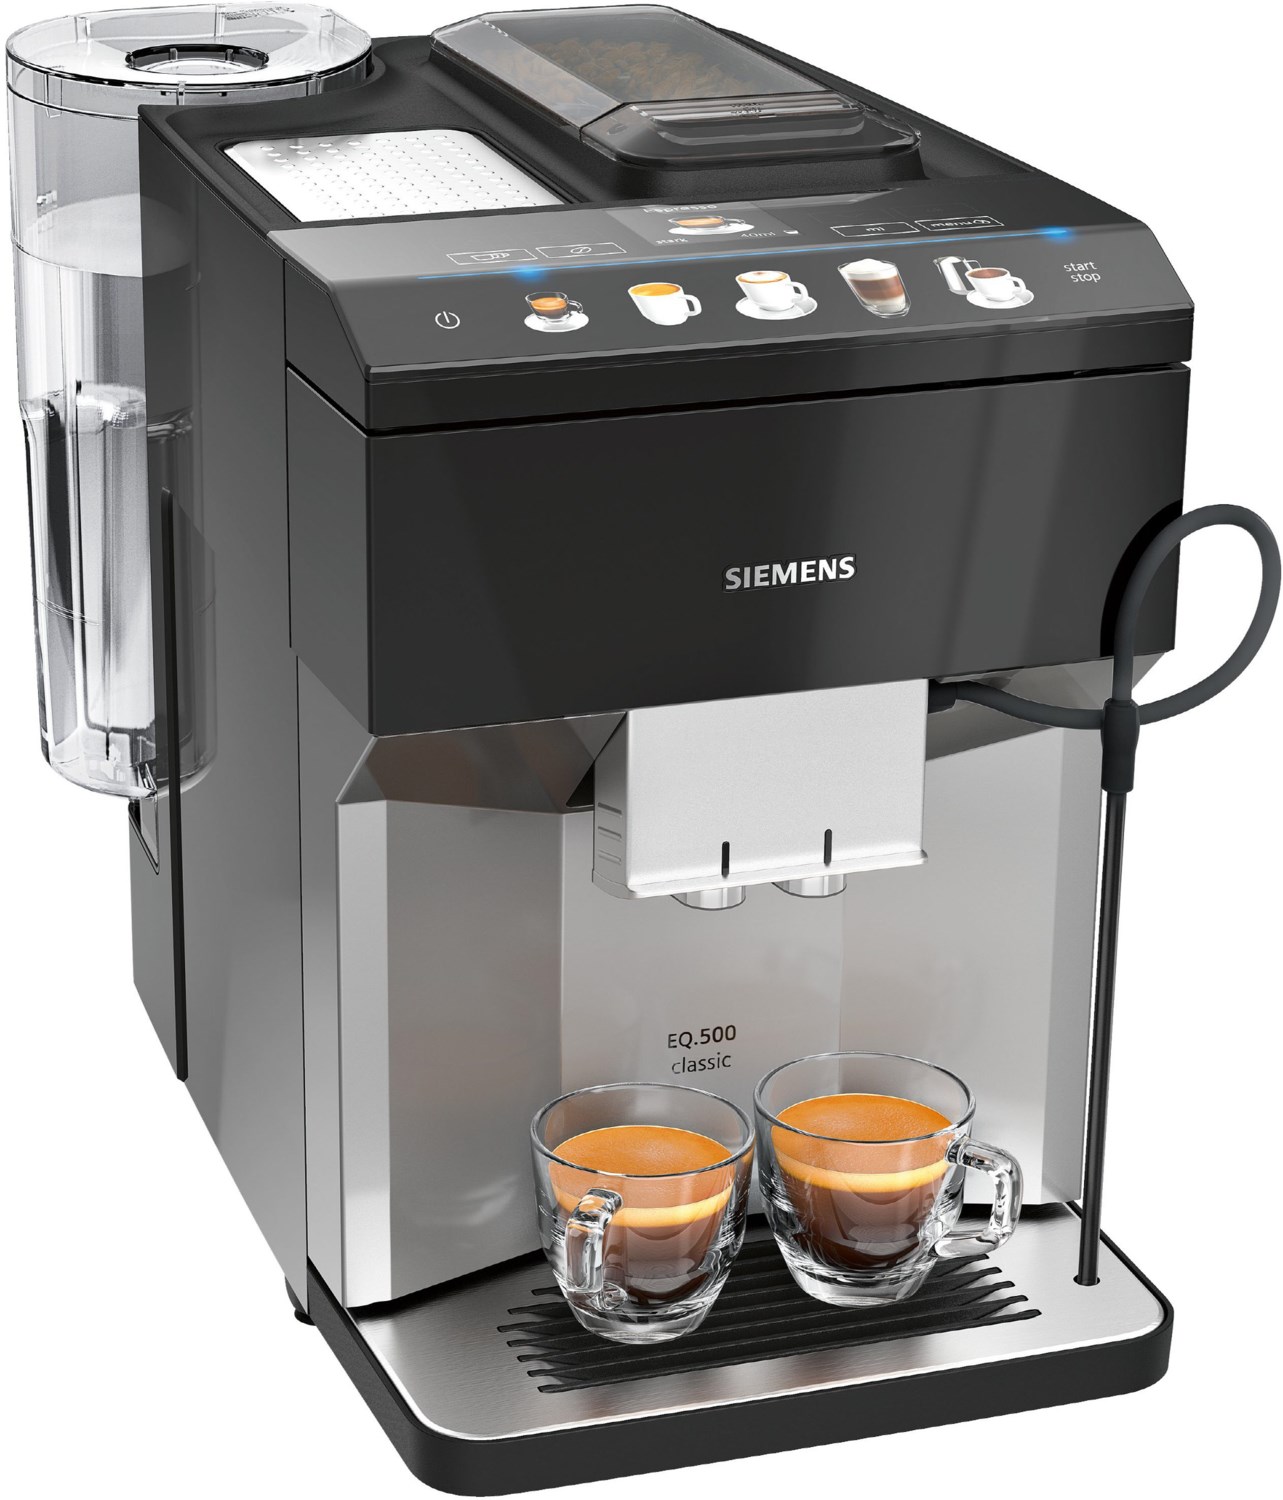 Siemens EQ 500 classic Kaffee-Vollautomat morning haze von Siemens